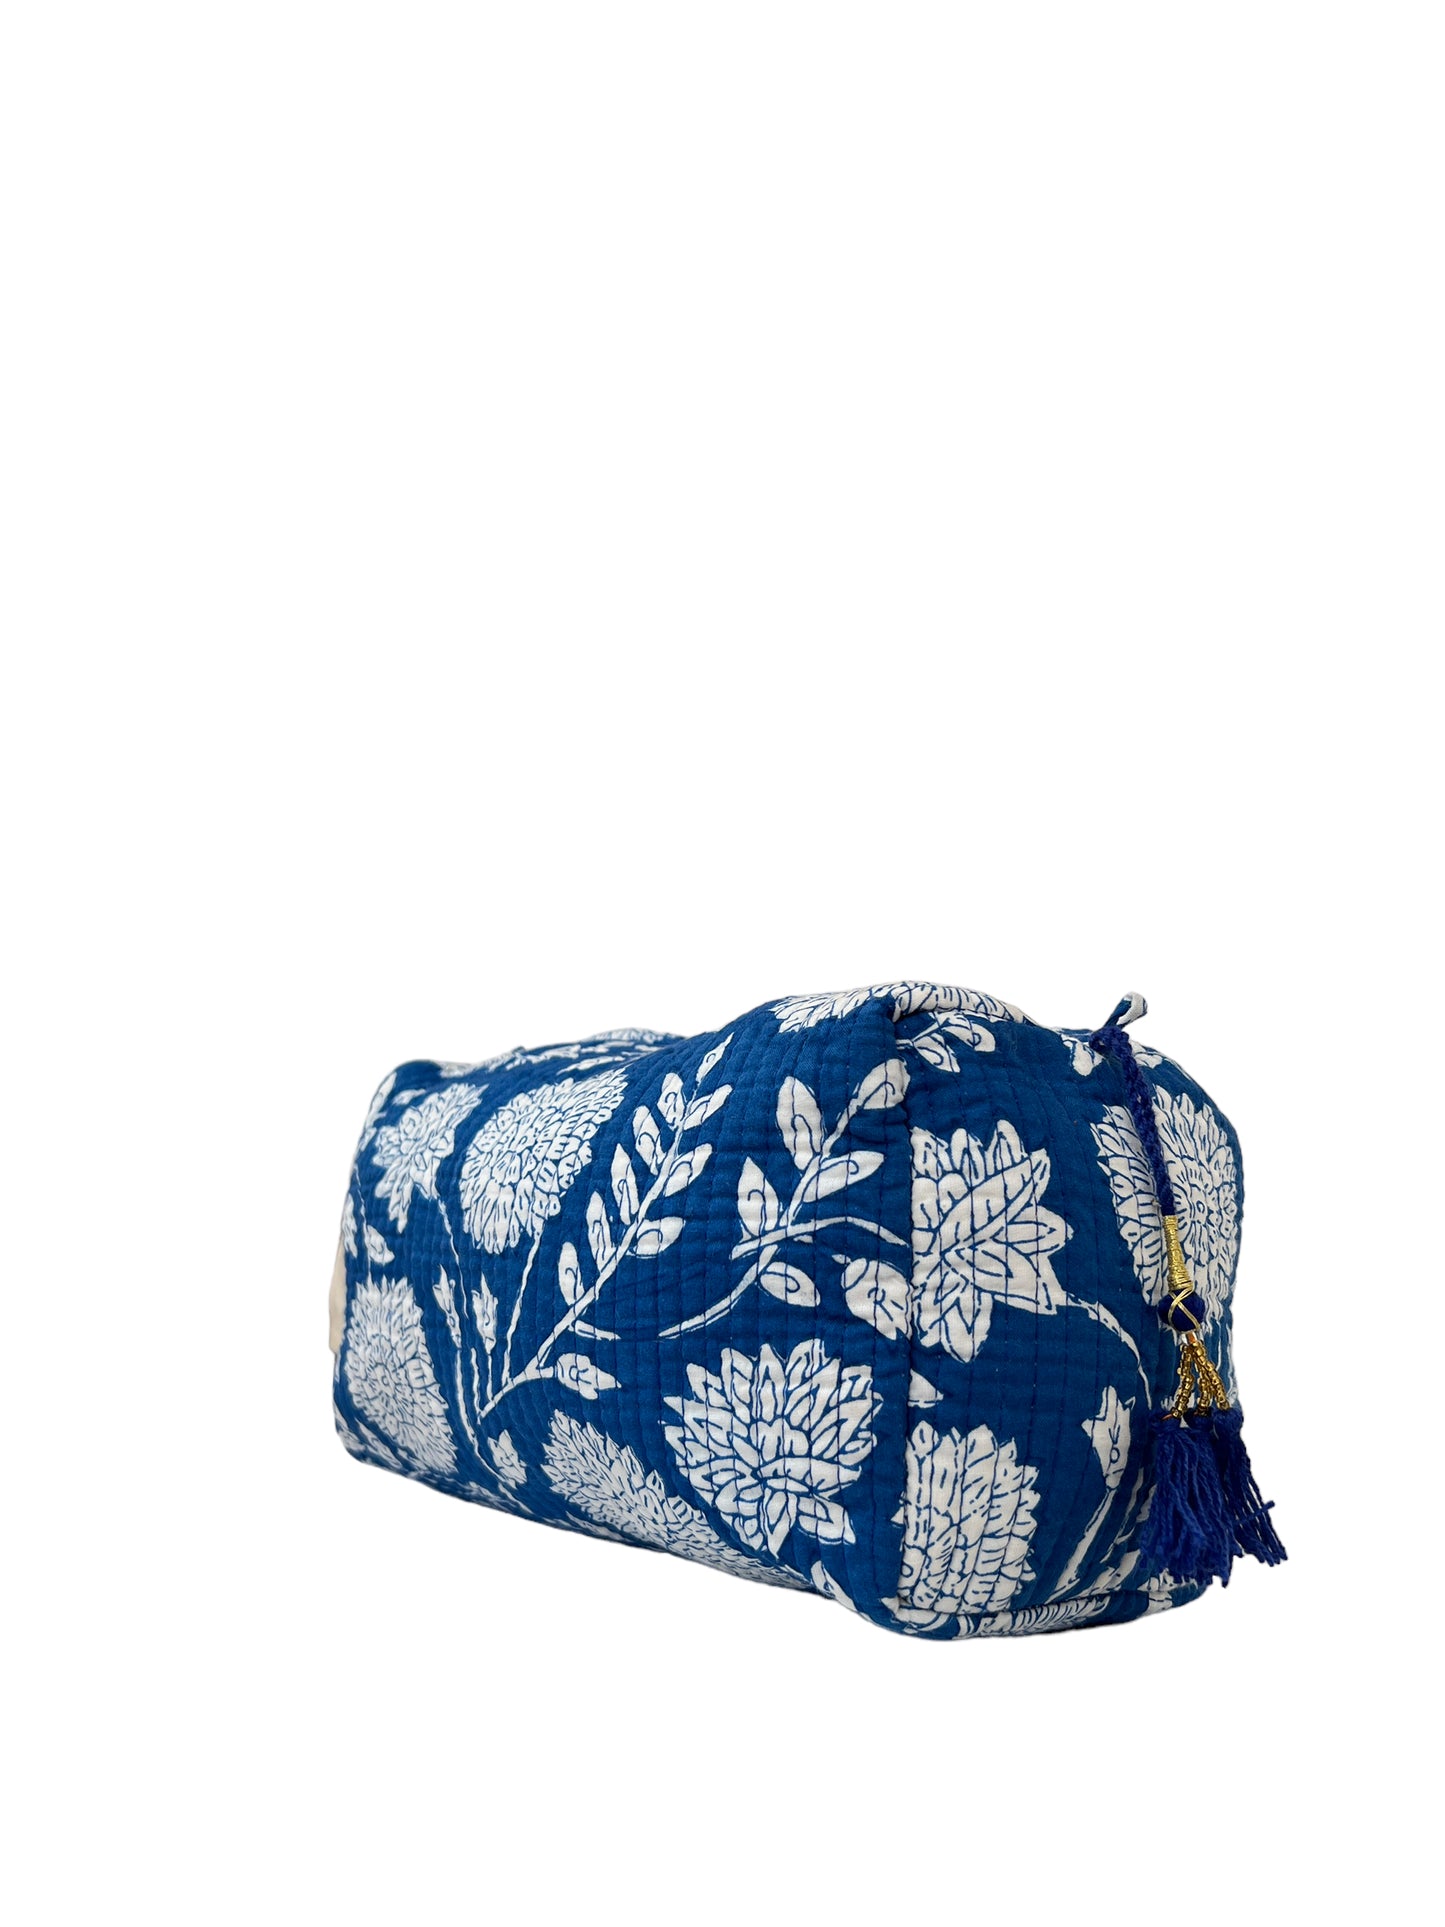 Make Up Bag Anne Marie Blue Floral (M071)